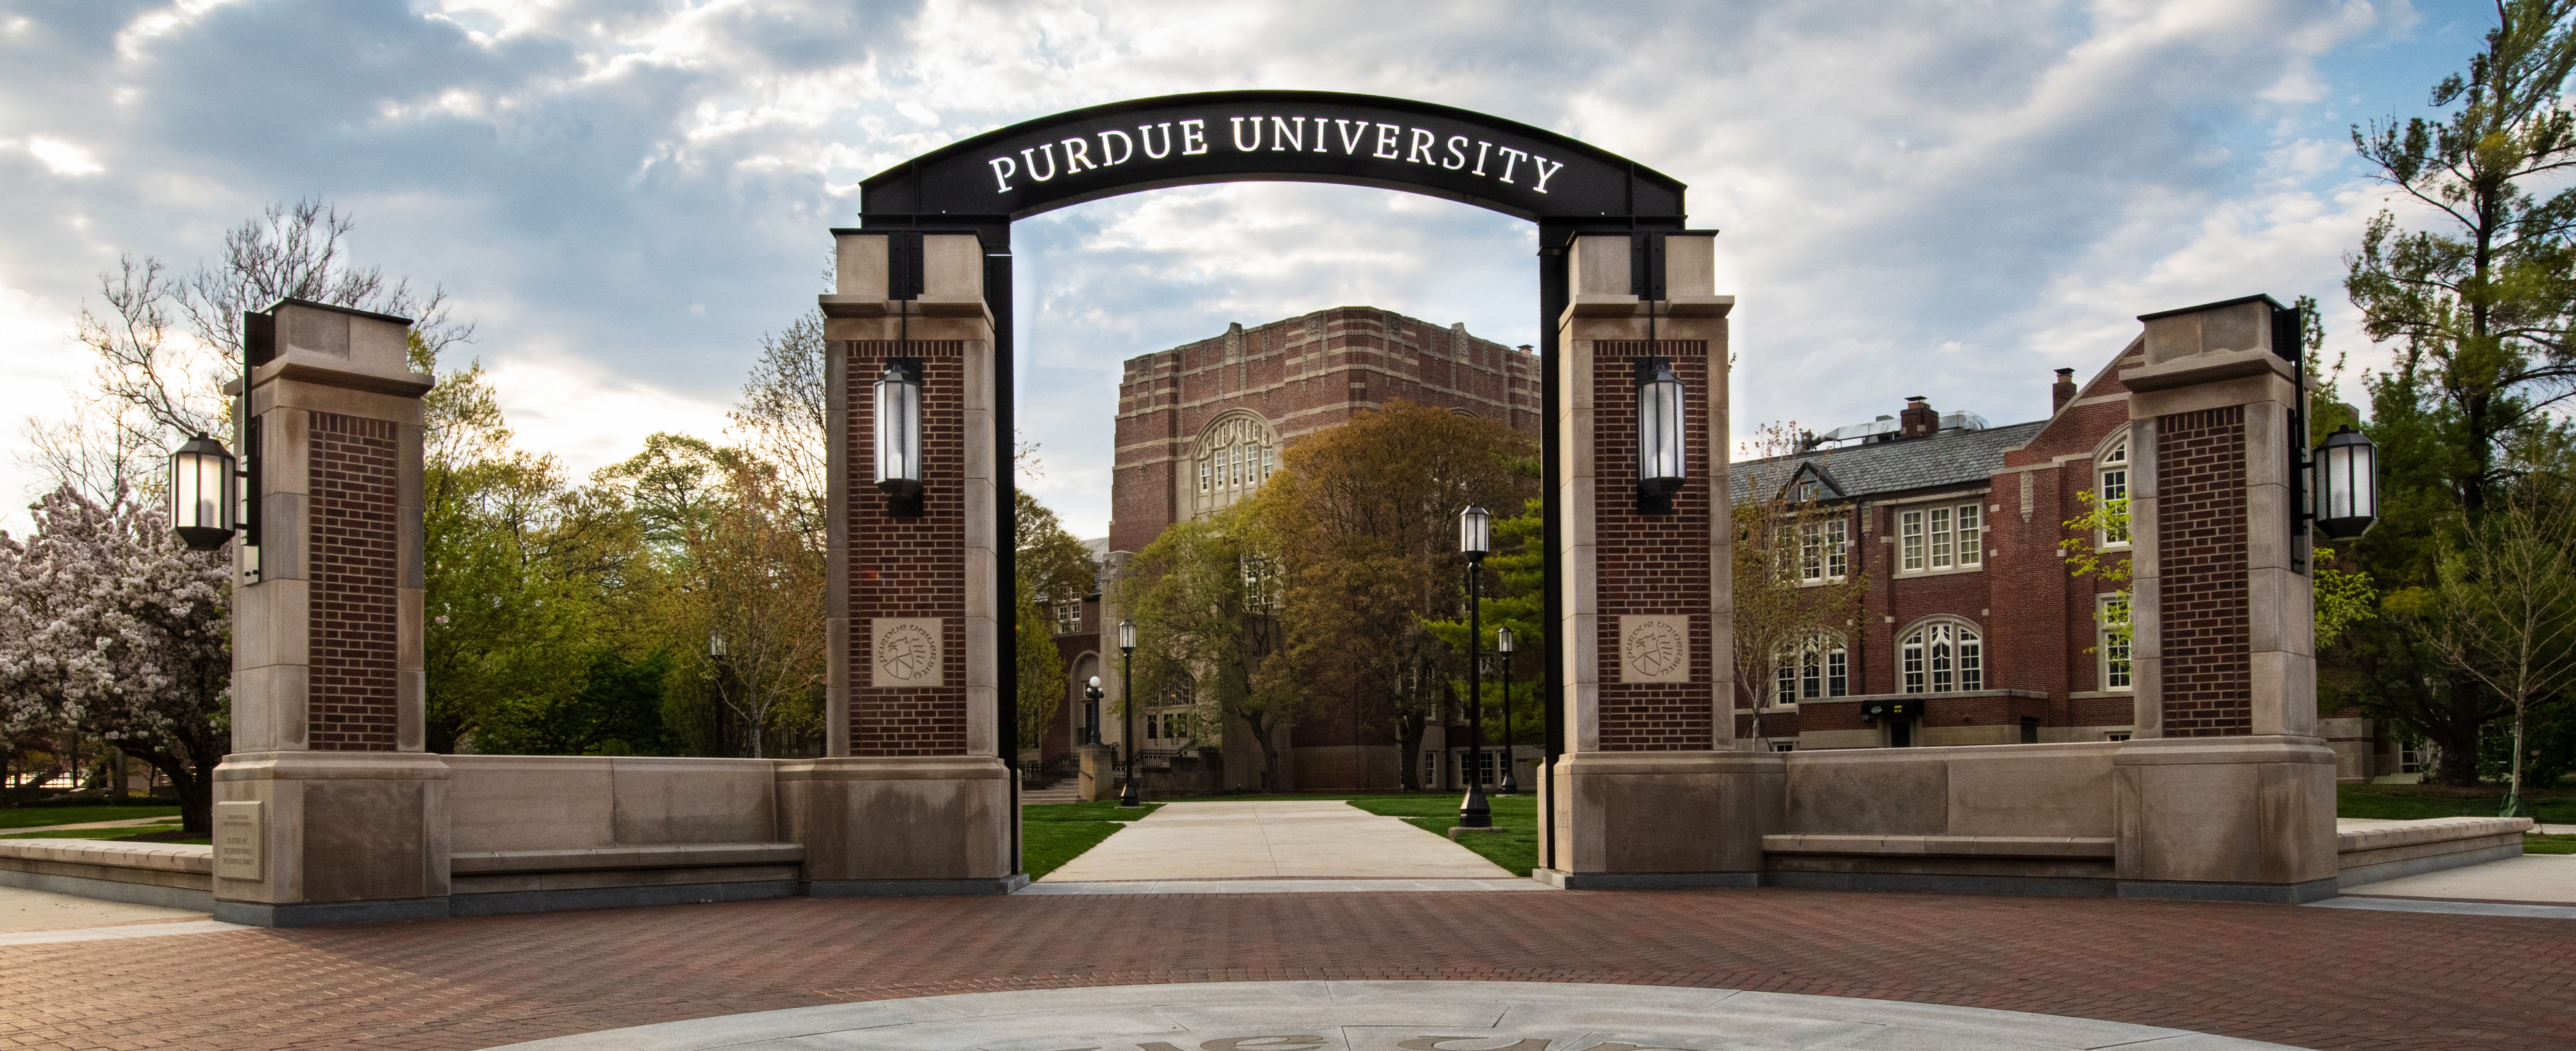 Banner image: shows Purdue University entrance gate